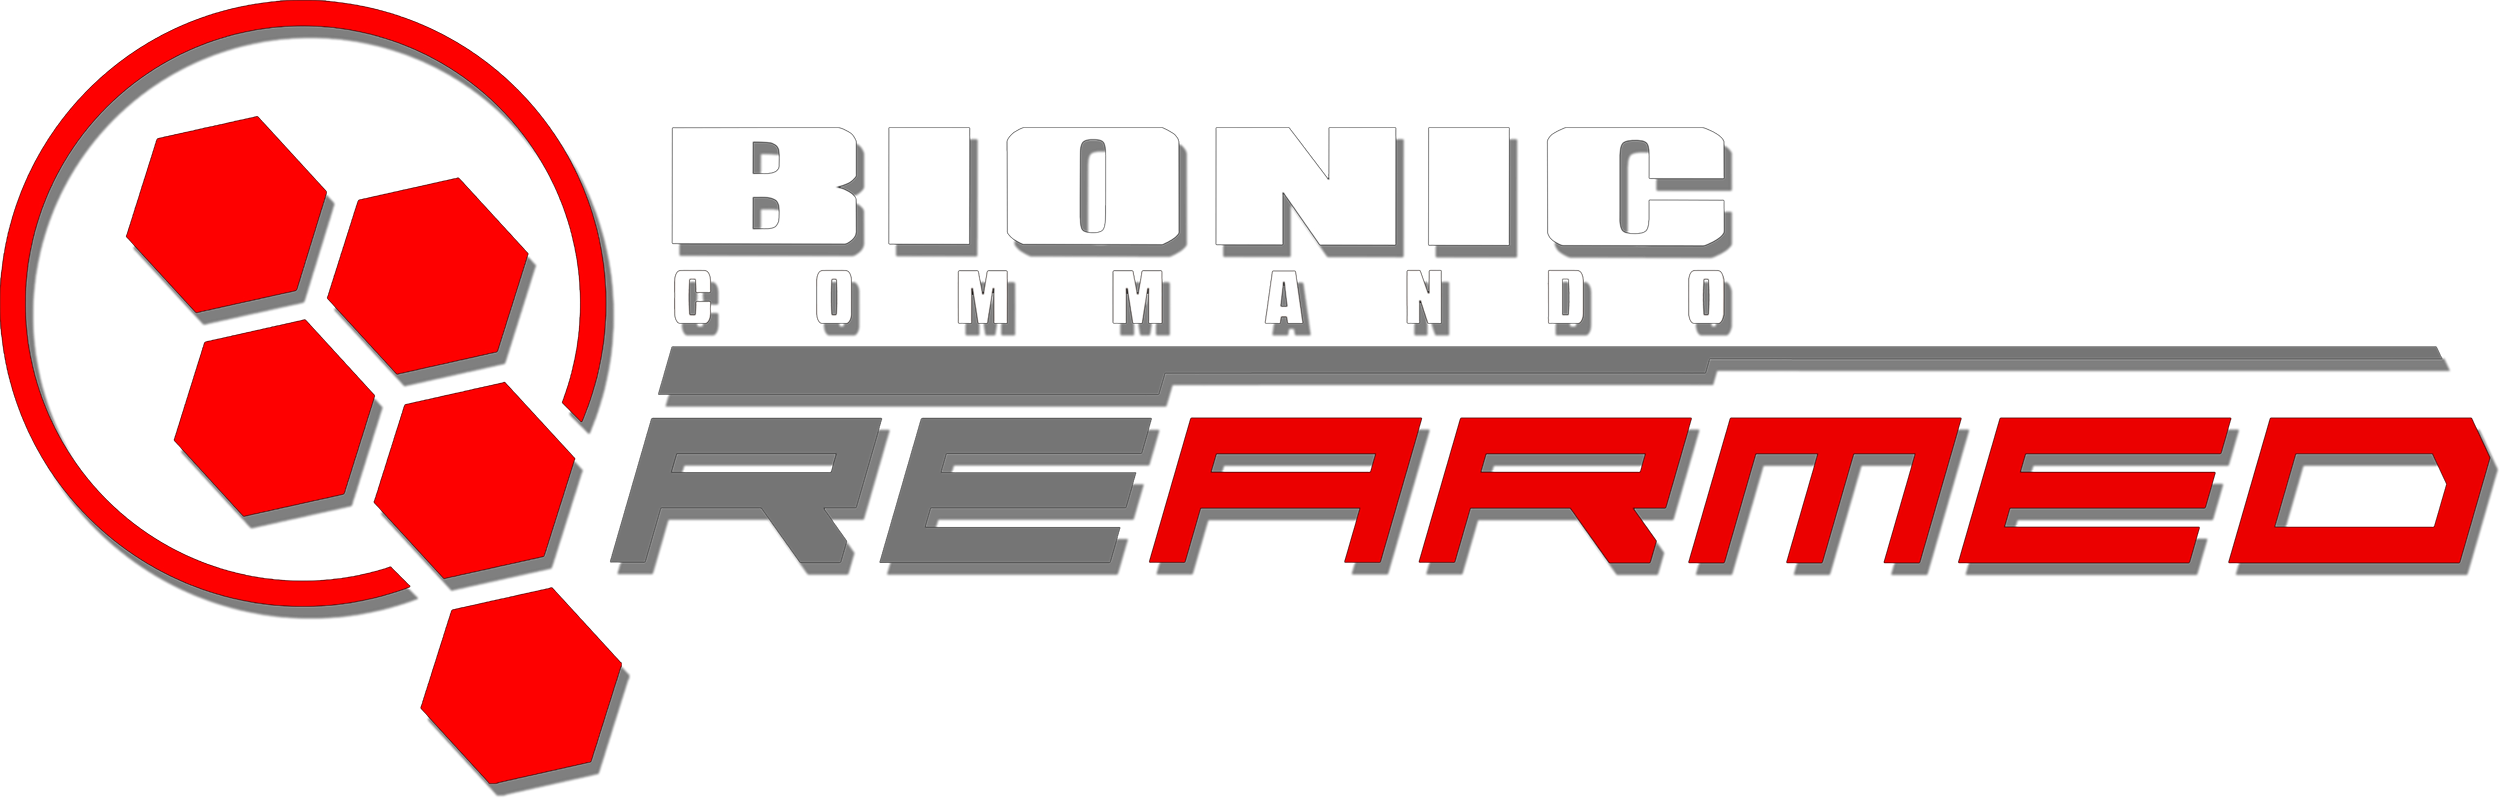 bionic rearmed download free